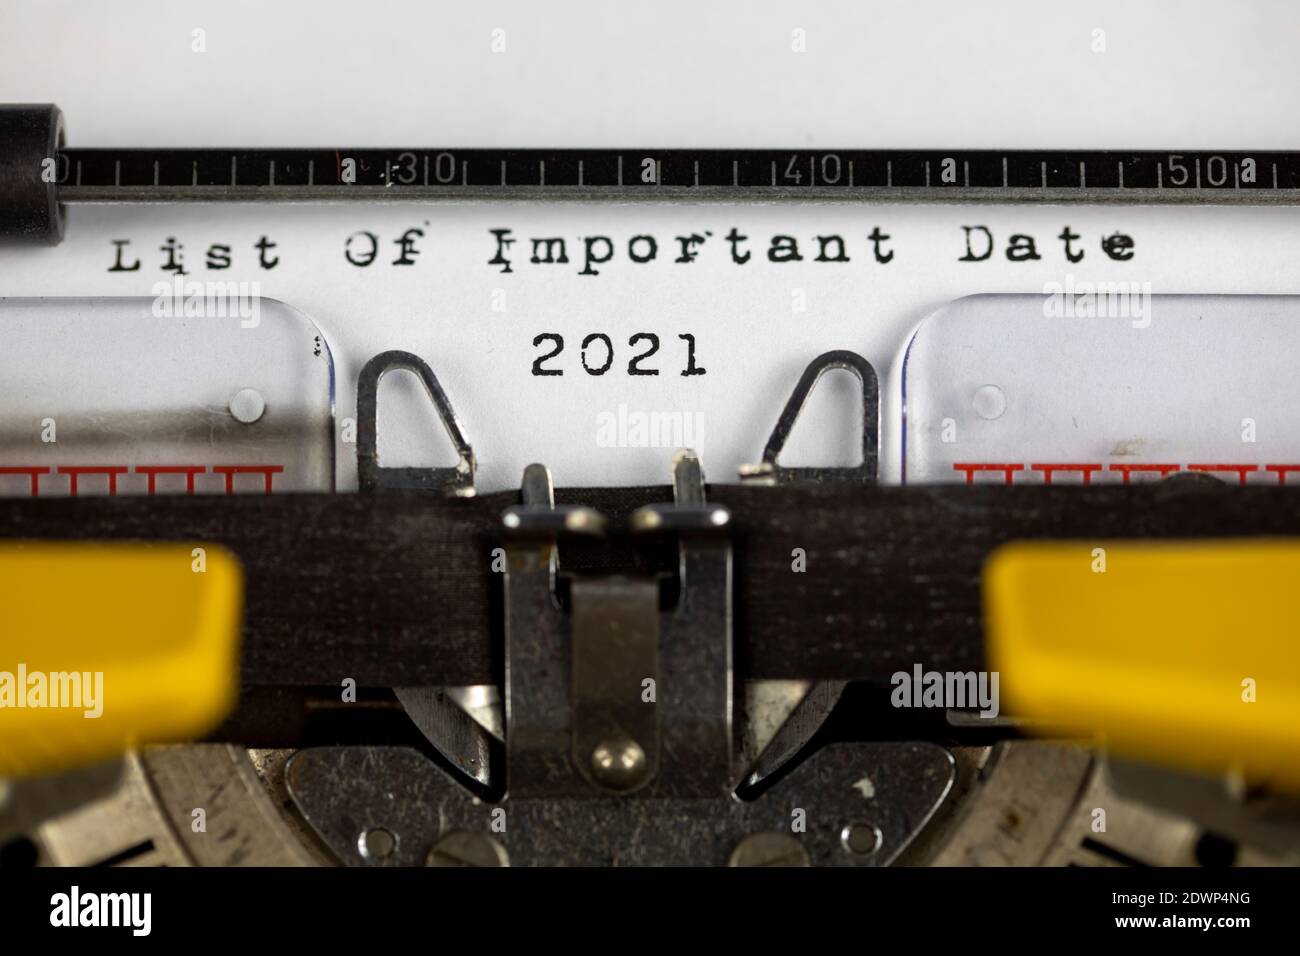 Lista de días importantes 2021 escrita en una máquina de escribir antigua Foto de stock